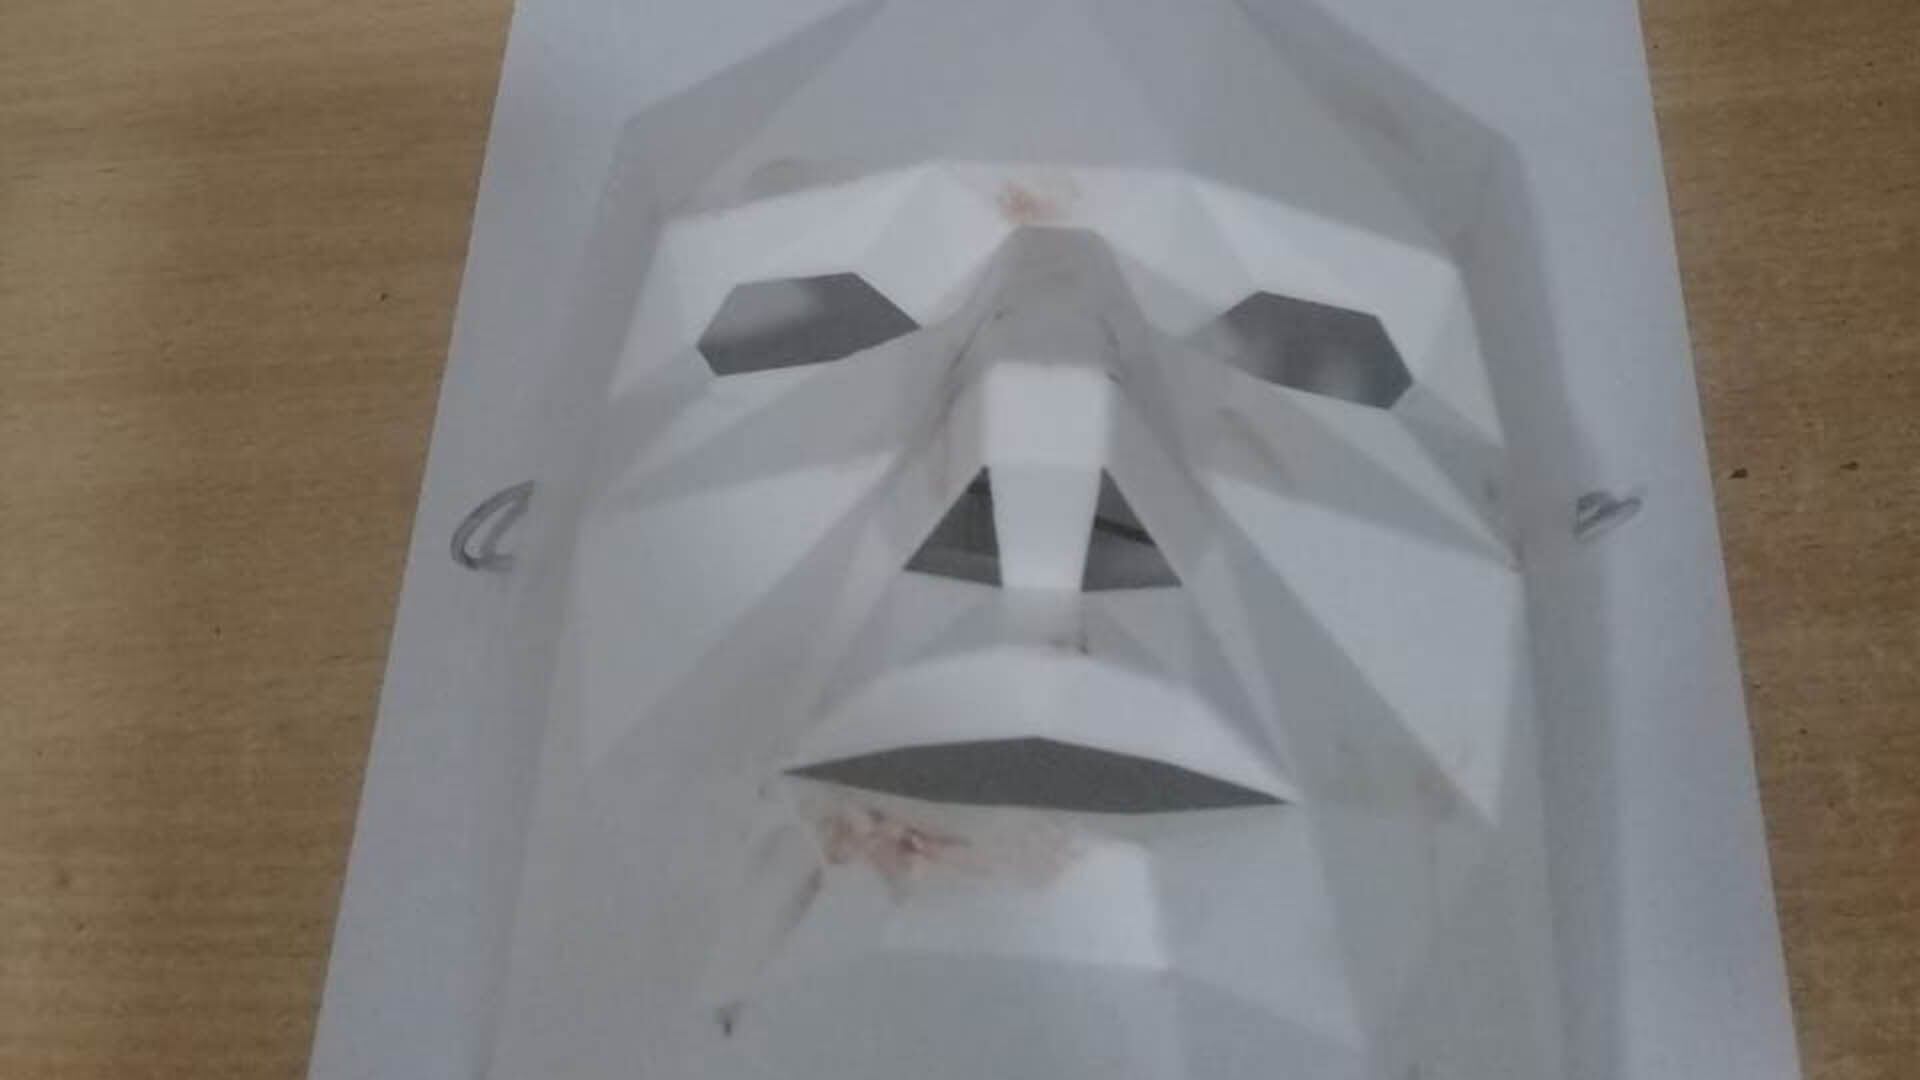 La máscara que usaba el delincuente, con rastros de sangre